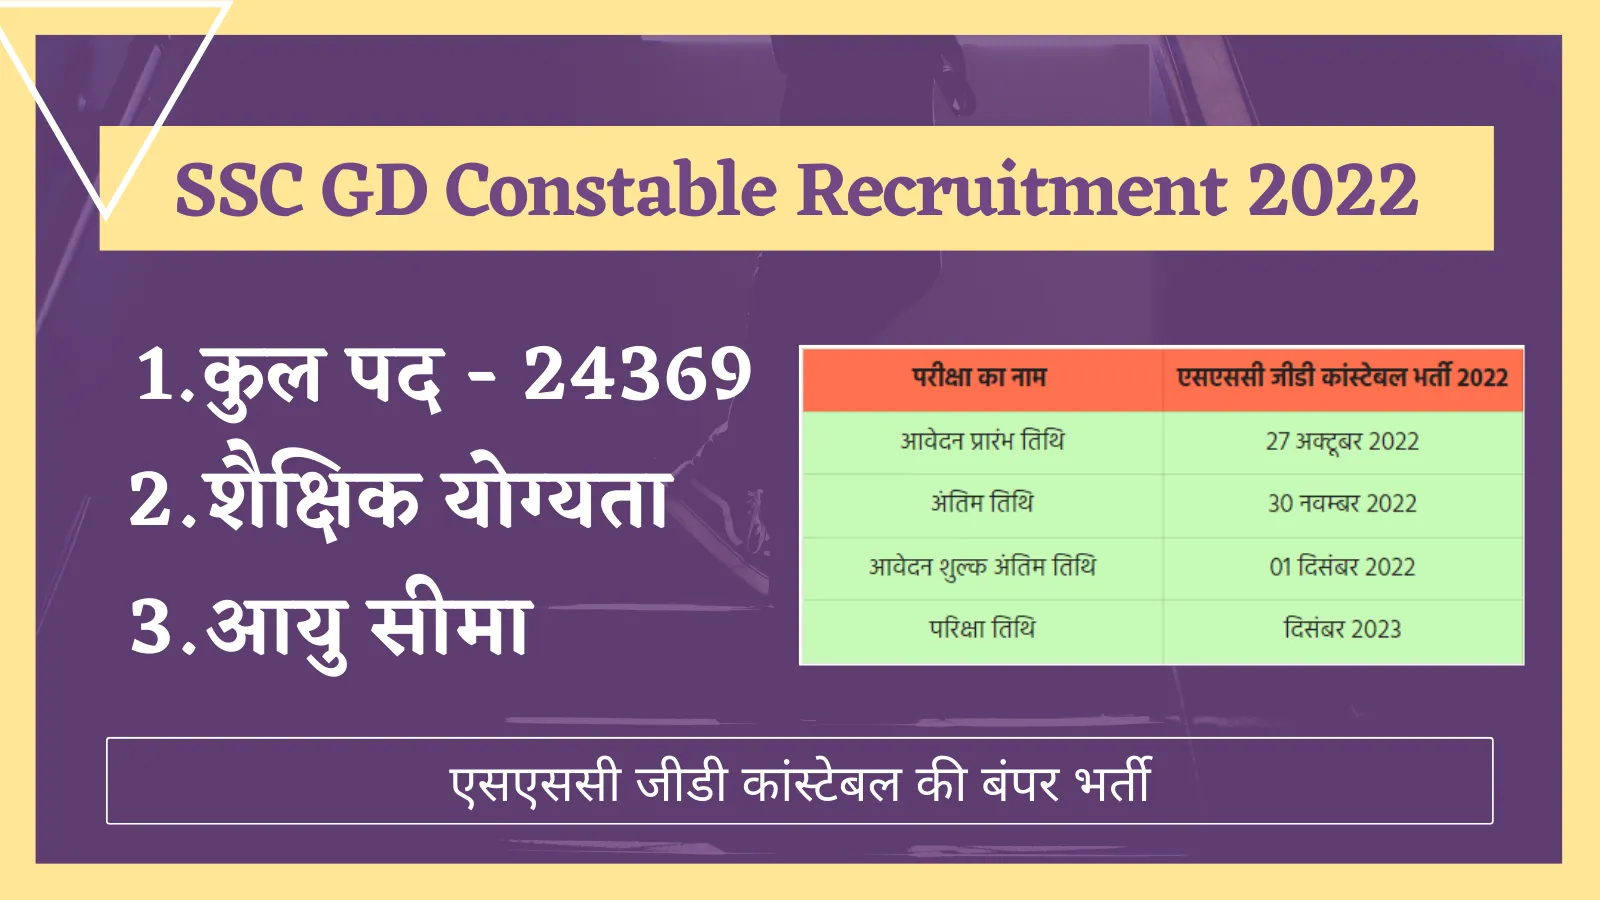 ssc gd constable 2022 recruitment